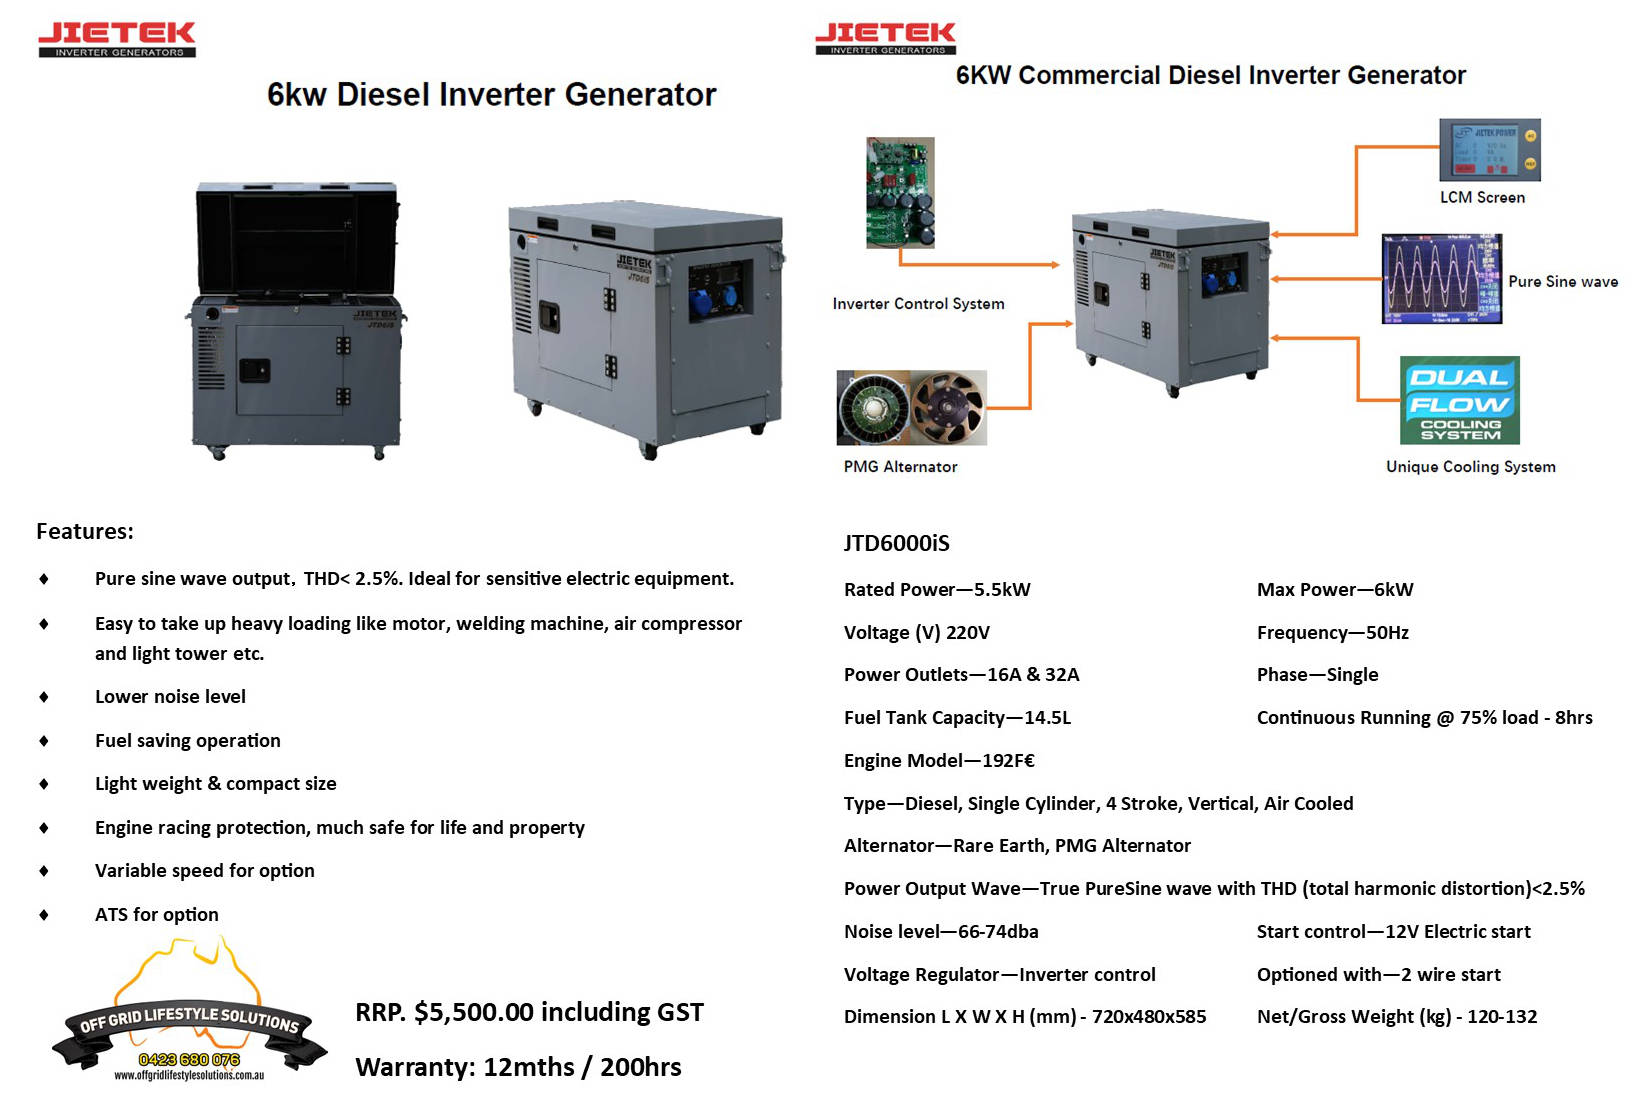 Jietek JTD6000iS diesel generator flyer